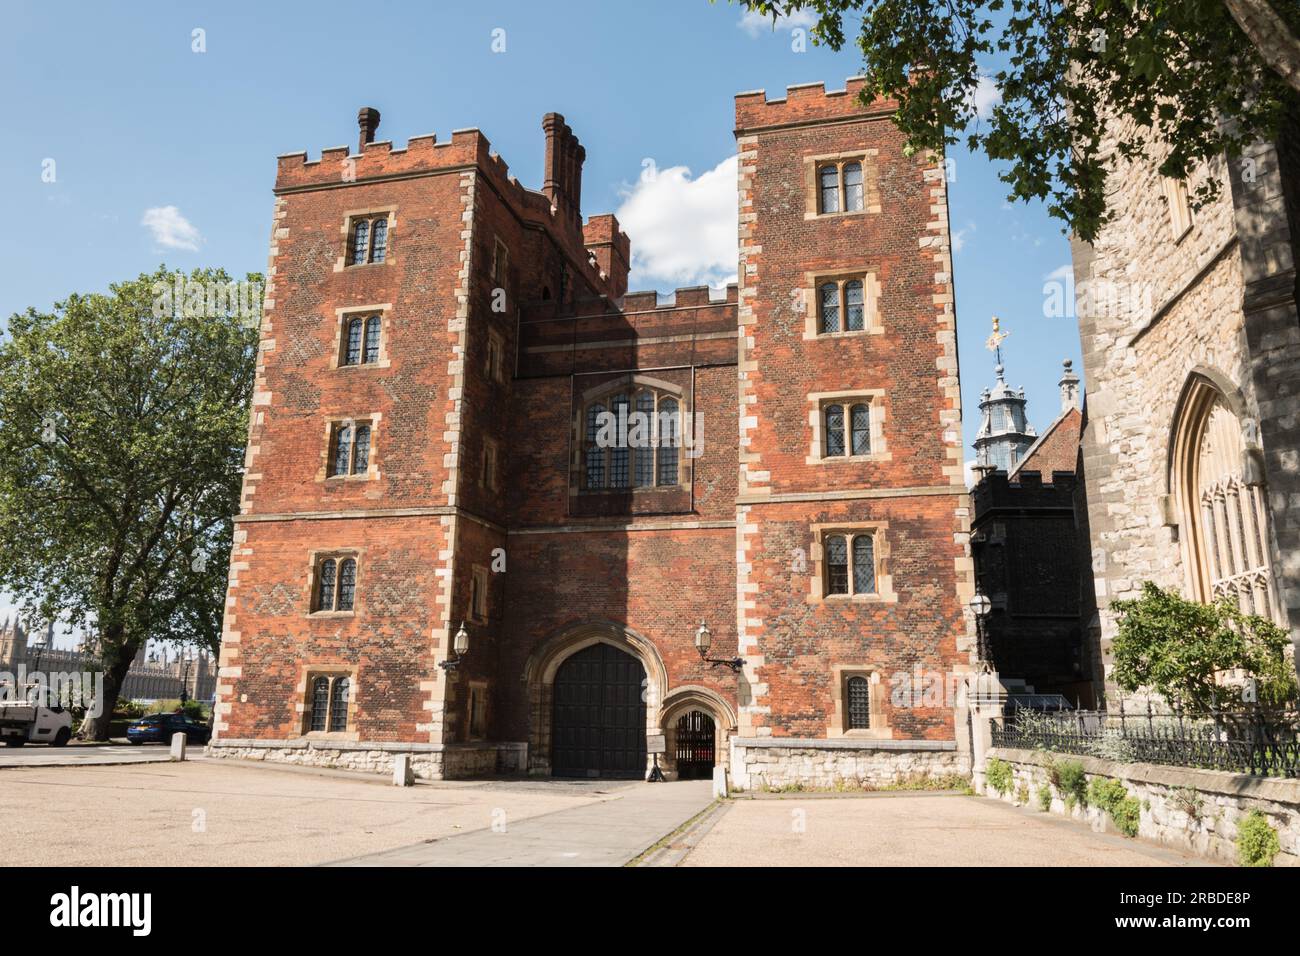 Lollards Tower Gatehouse, Lambeth Palace, die offizielle Londoner Residenz des Erzbischofs von Canterbury, Lambeth, London, England, Großbritannien Stockfoto